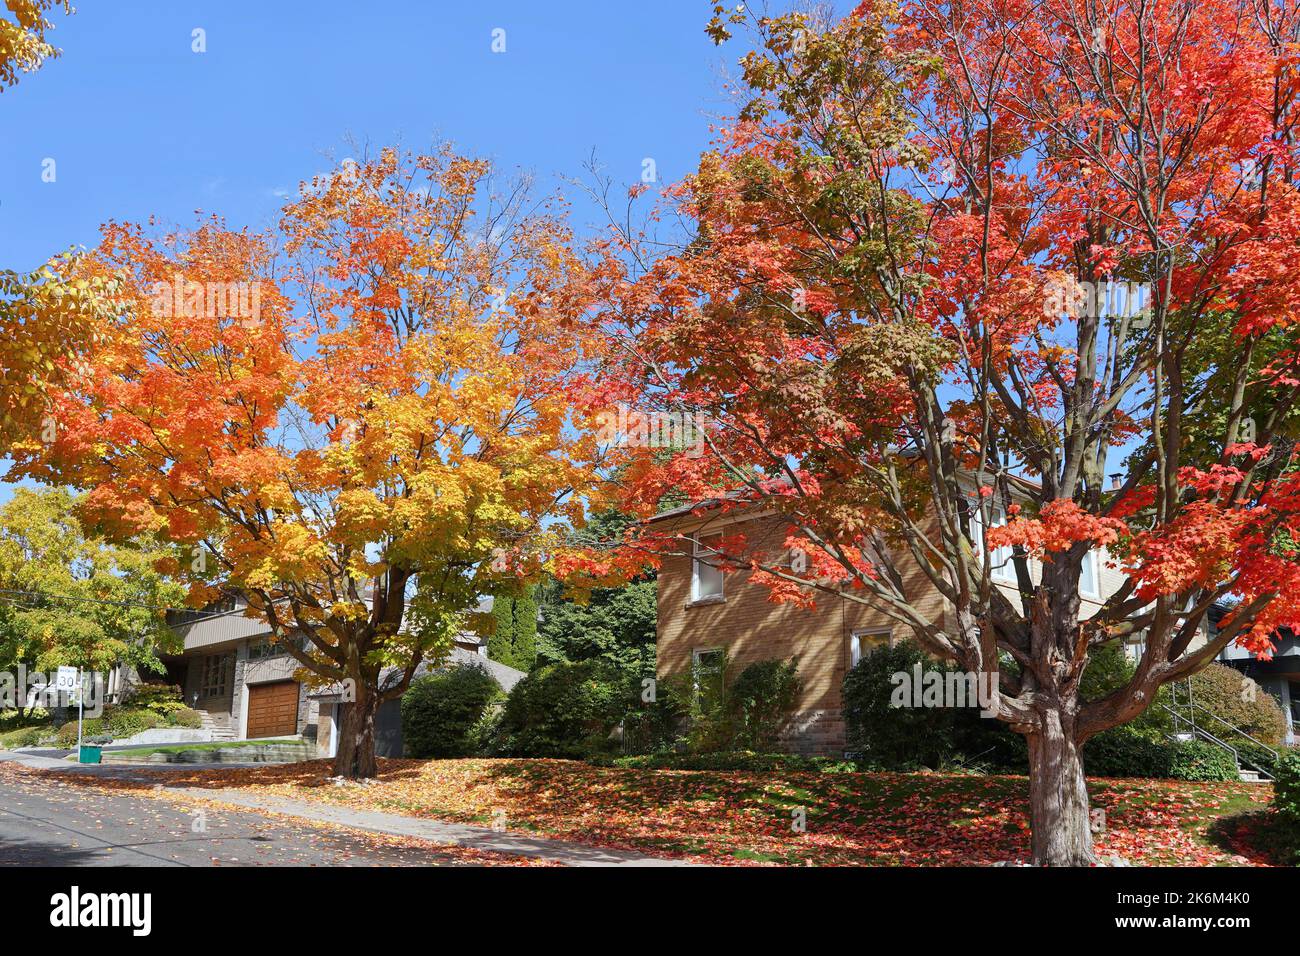 Rue résidentielle de banlieue avec arbres aux couleurs vives de l'automne Banque D'Images